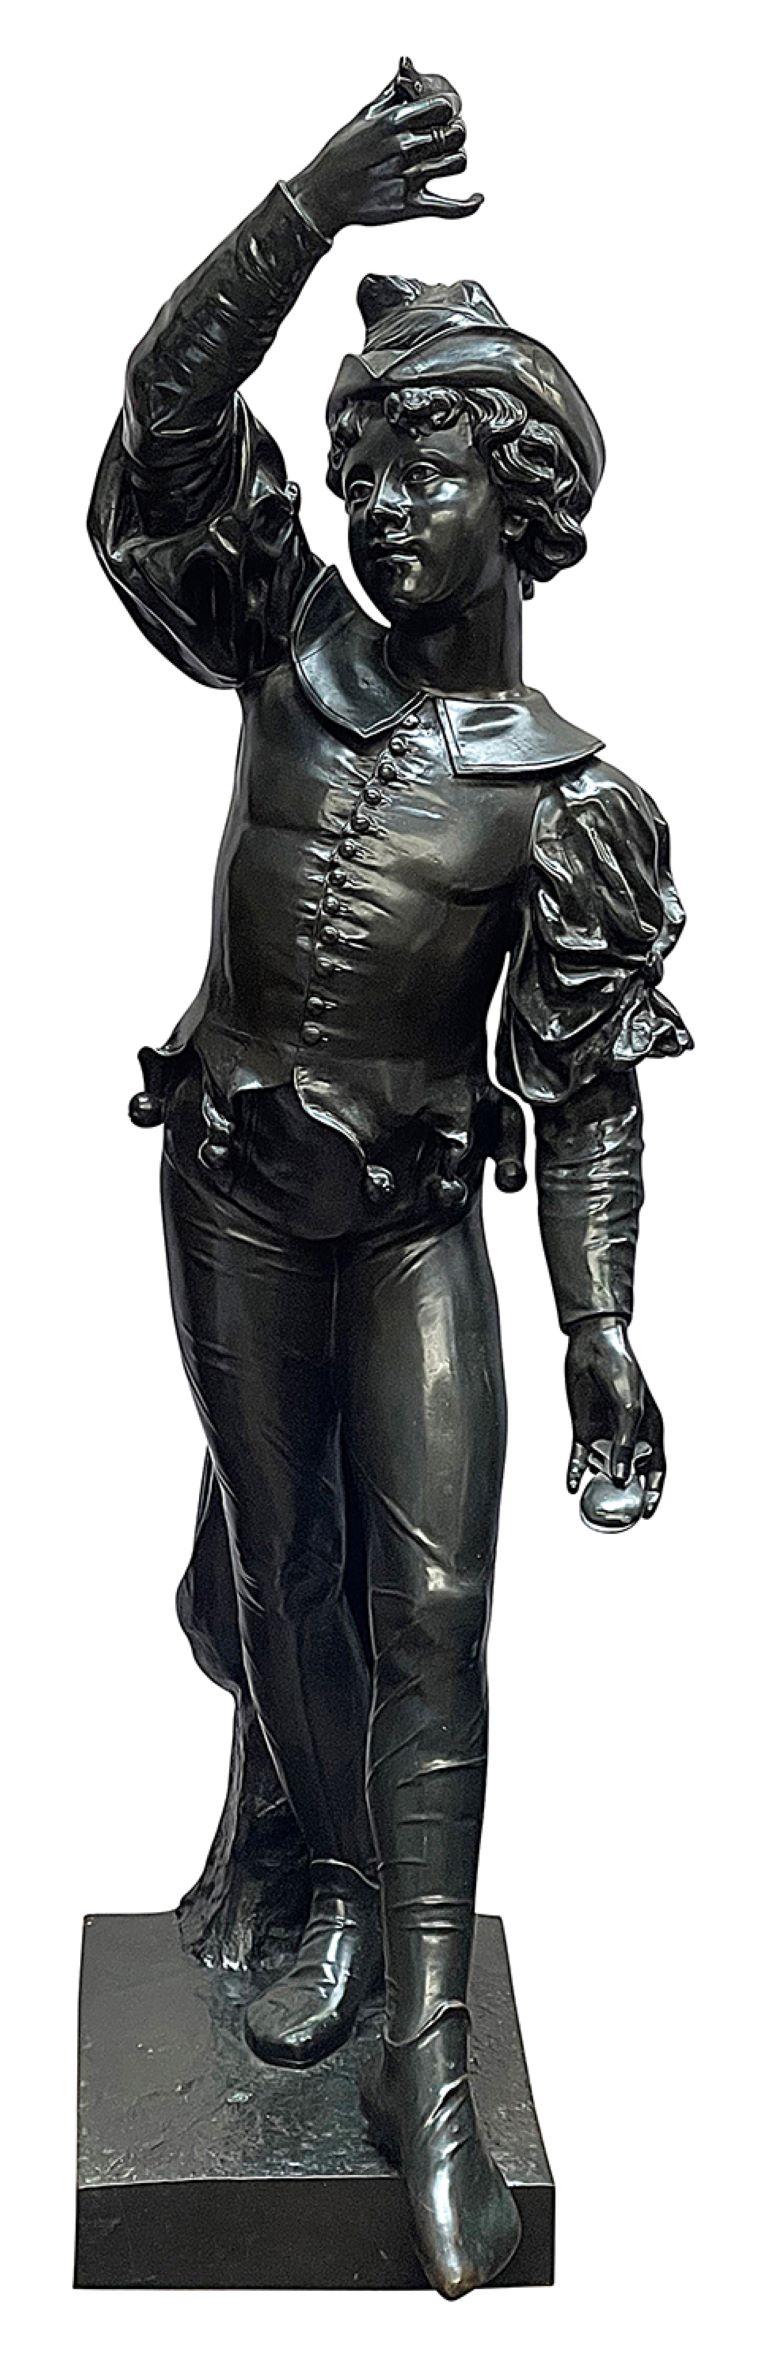 Eine wunderbar beeindruckende und amüsante klassische patinierte Bronzestatue eines Hofnarren aus dem 19. Jahrhundert, signiert A. Bolle.
Charge 73 CZZK  60825